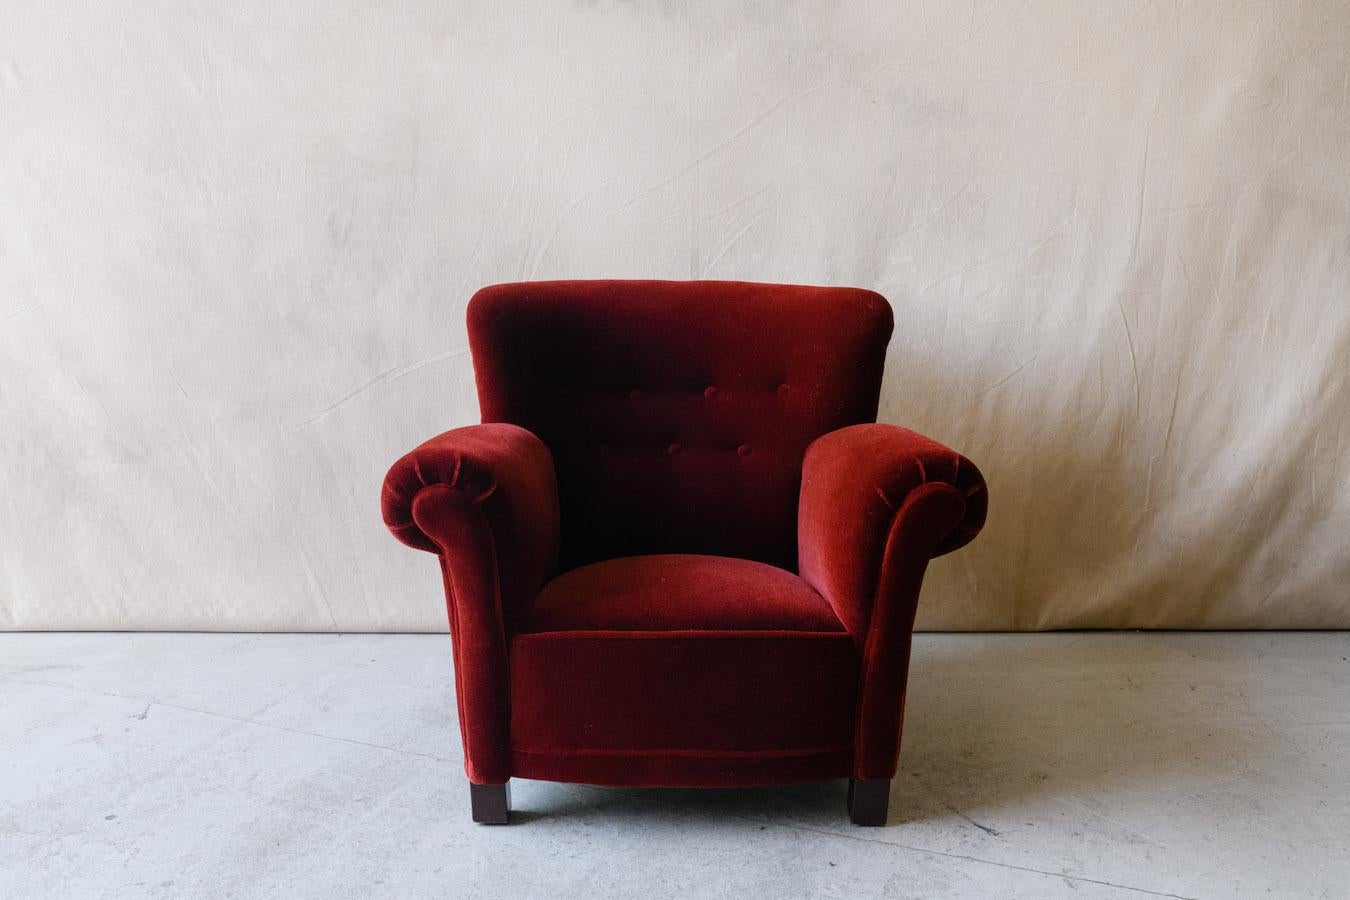 Mitte des 19. Jahrhunderts Samt Sessel aus Dänemark, ca. 1950.  Schönes komfortables Modell, gepolstert mit sehr weichem Samt-Mohair-Stoff.  Ausgezeichneter Zustand.  

Wir haben nicht die Zeit, zu jedem unserer Stücke eine ausführliche Beschreibung